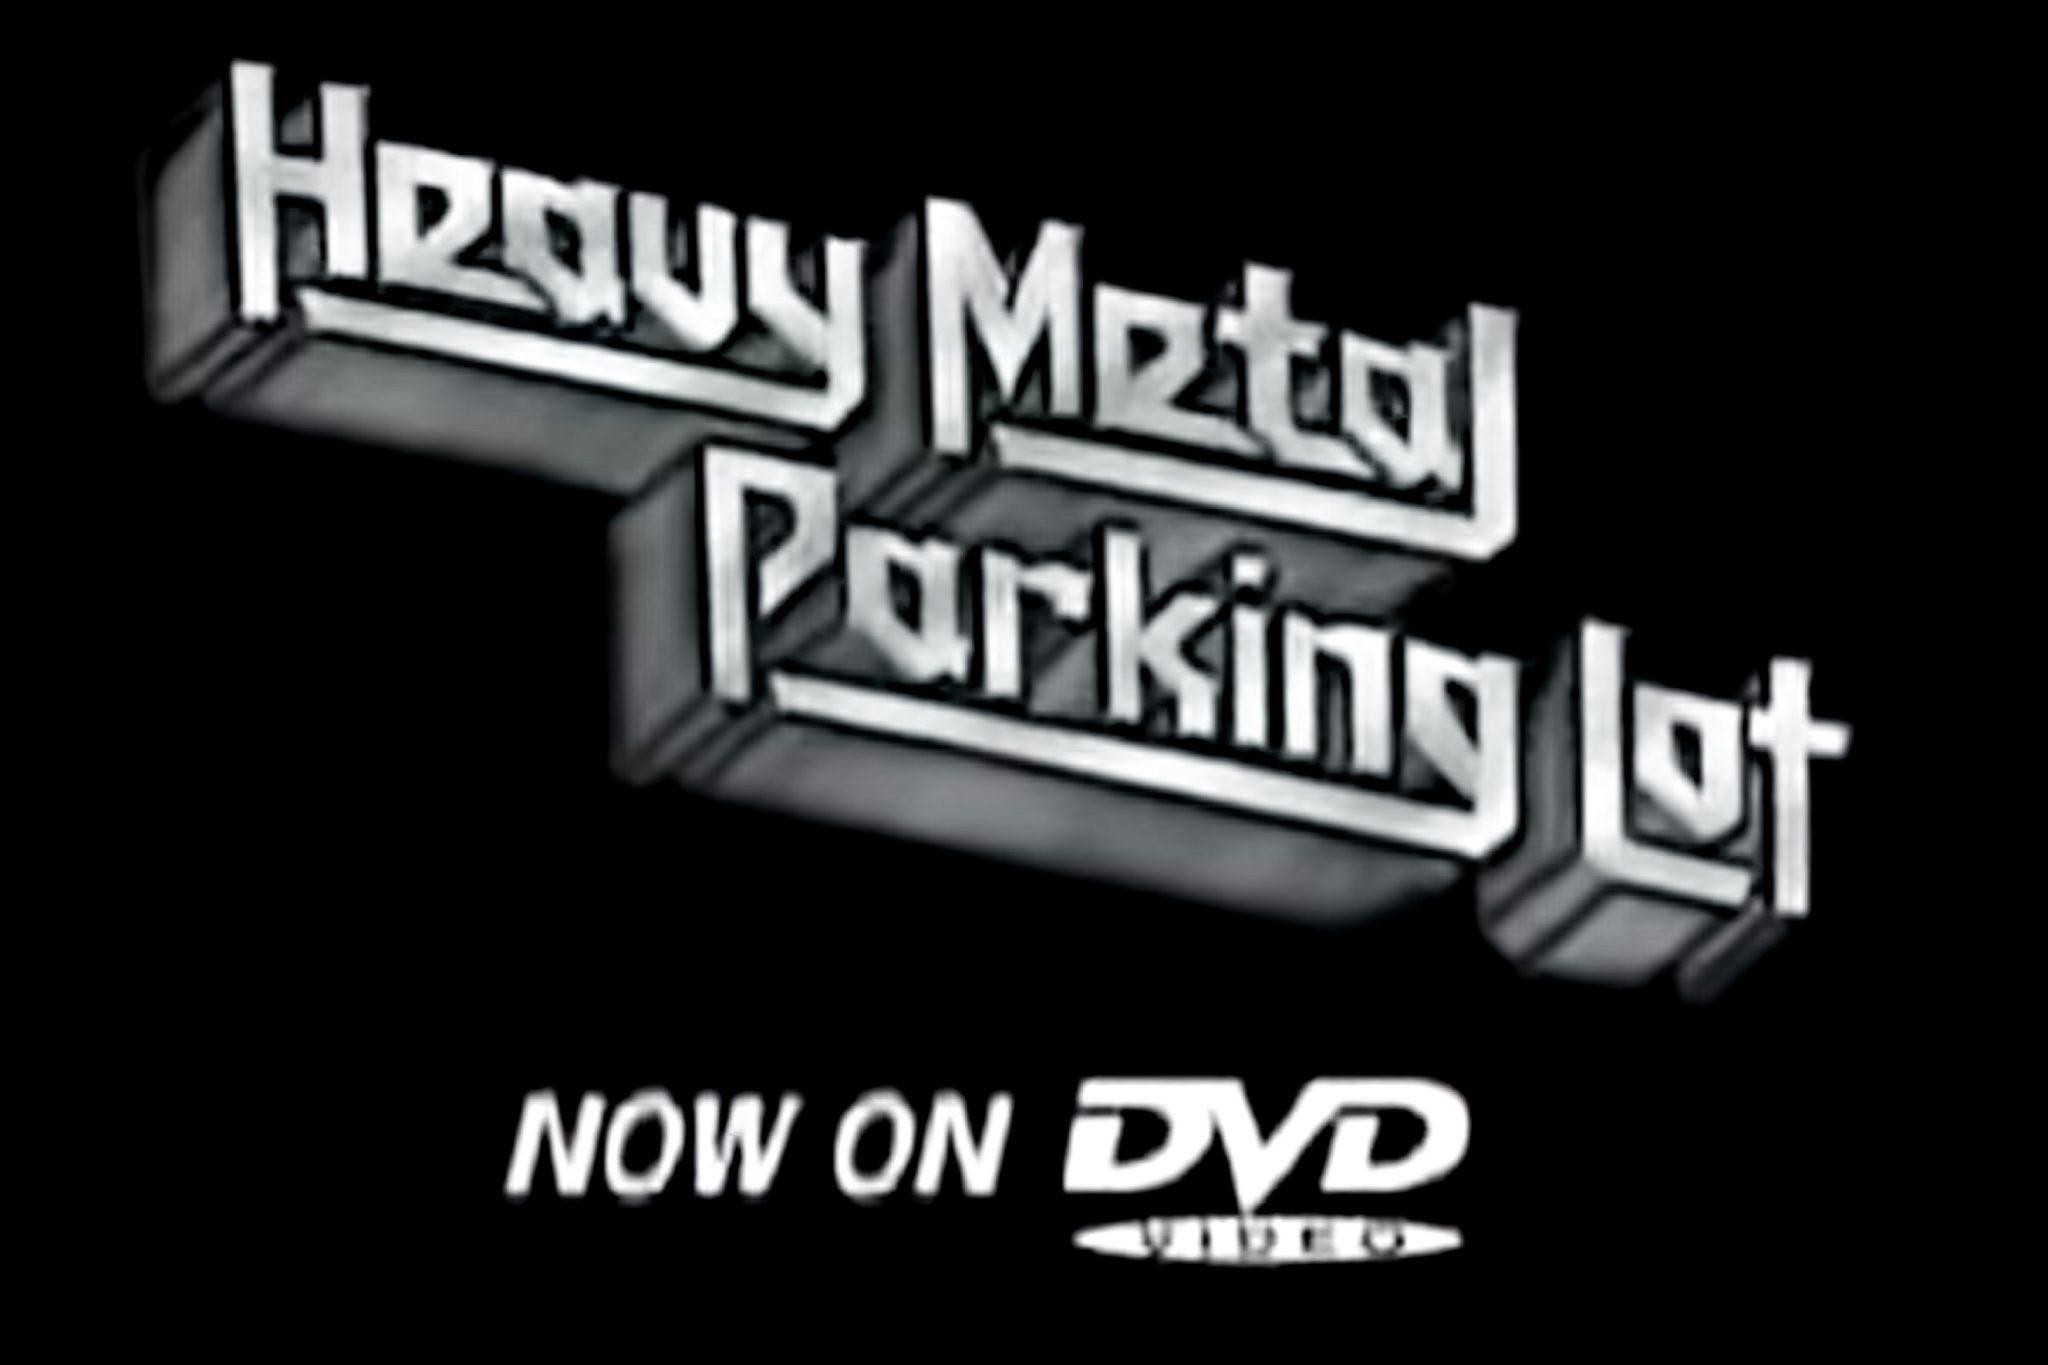 Heavy Metal Parking Lot.